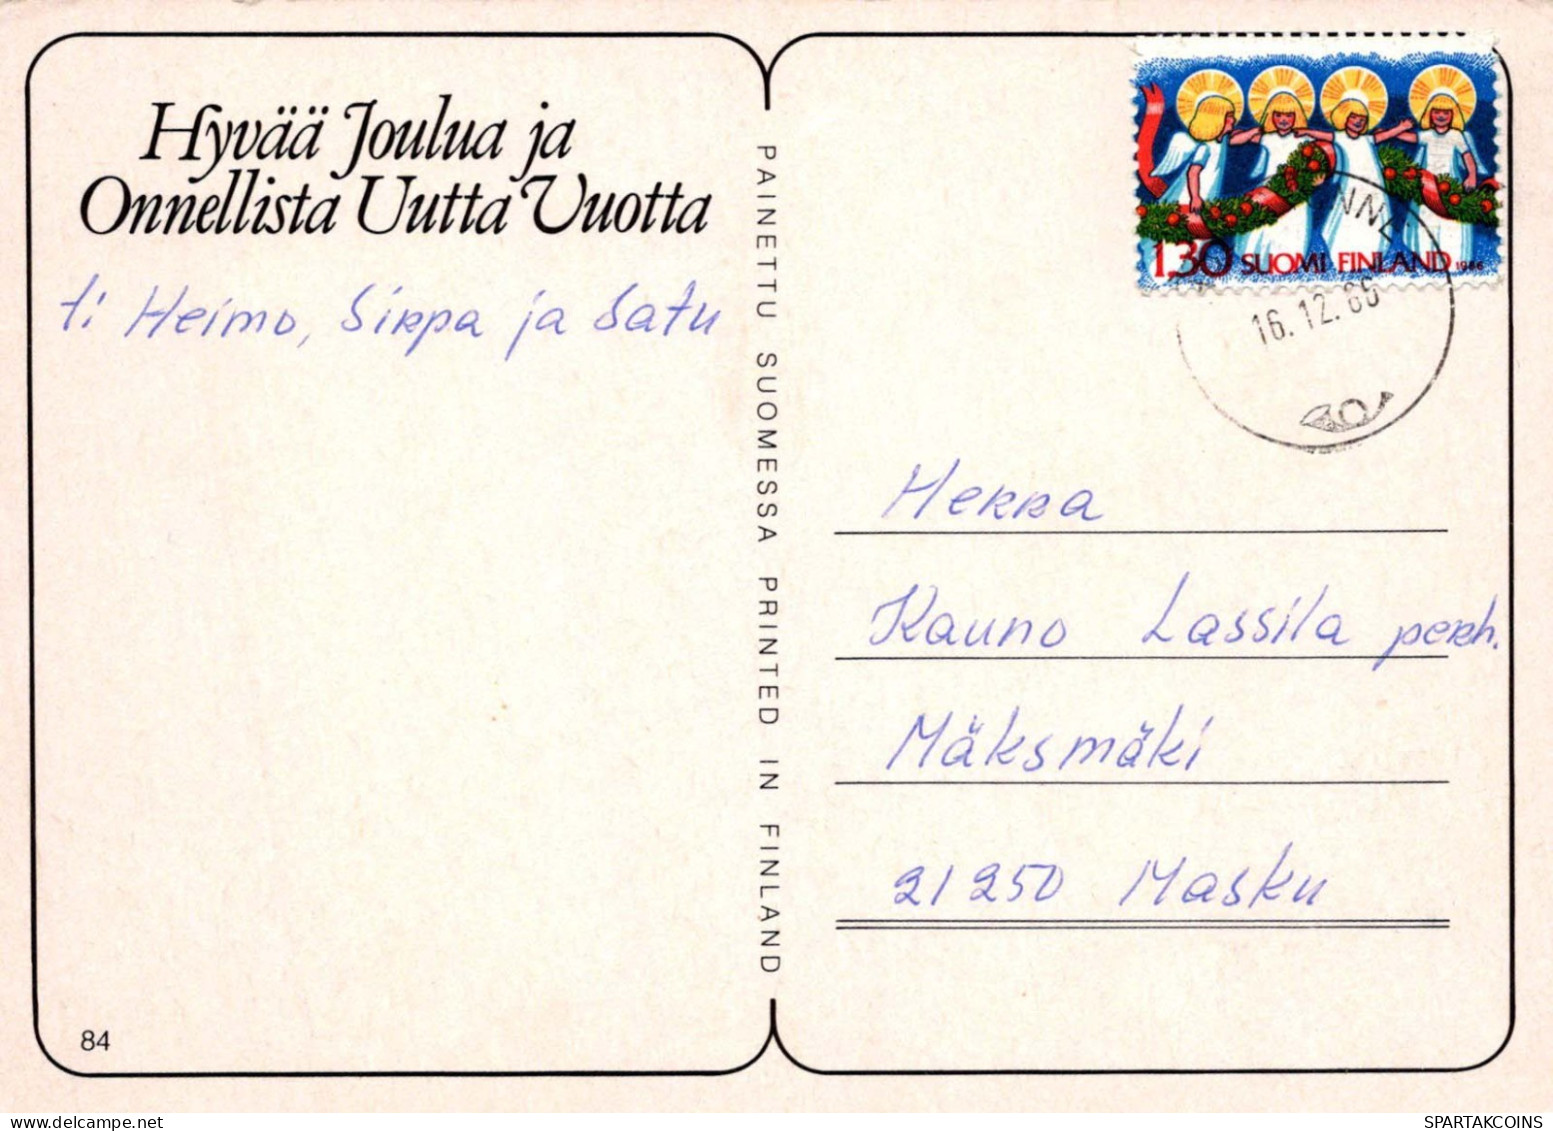 PÈRE NOËL Bonne Année Noël GNOME Vintage Carte Postale CPSM #PBL921.A - Santa Claus